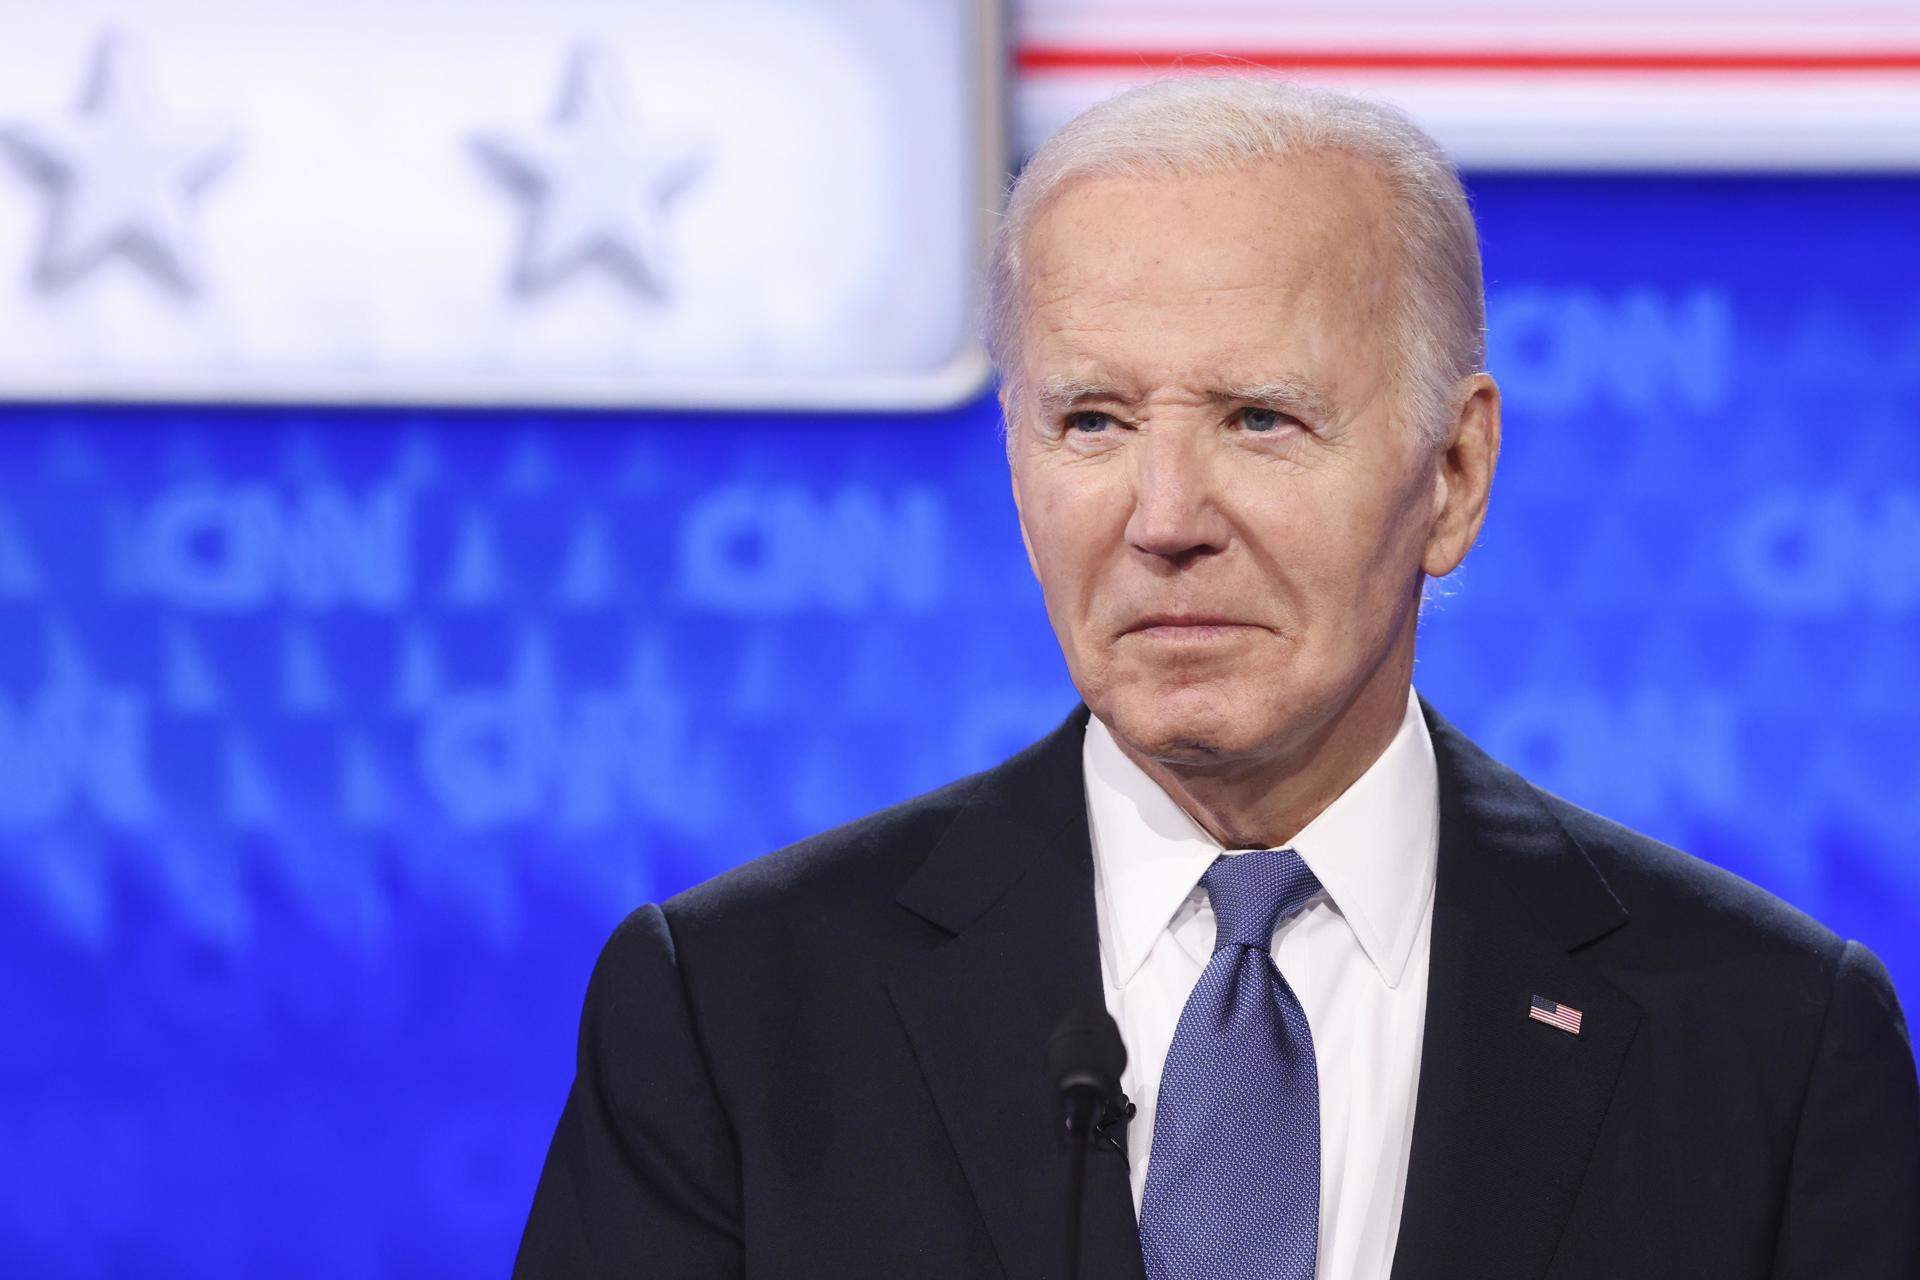 ¿Pueden los demócratas sustituir a Joe Biden como candidato pocos meses antes de las elecciones?